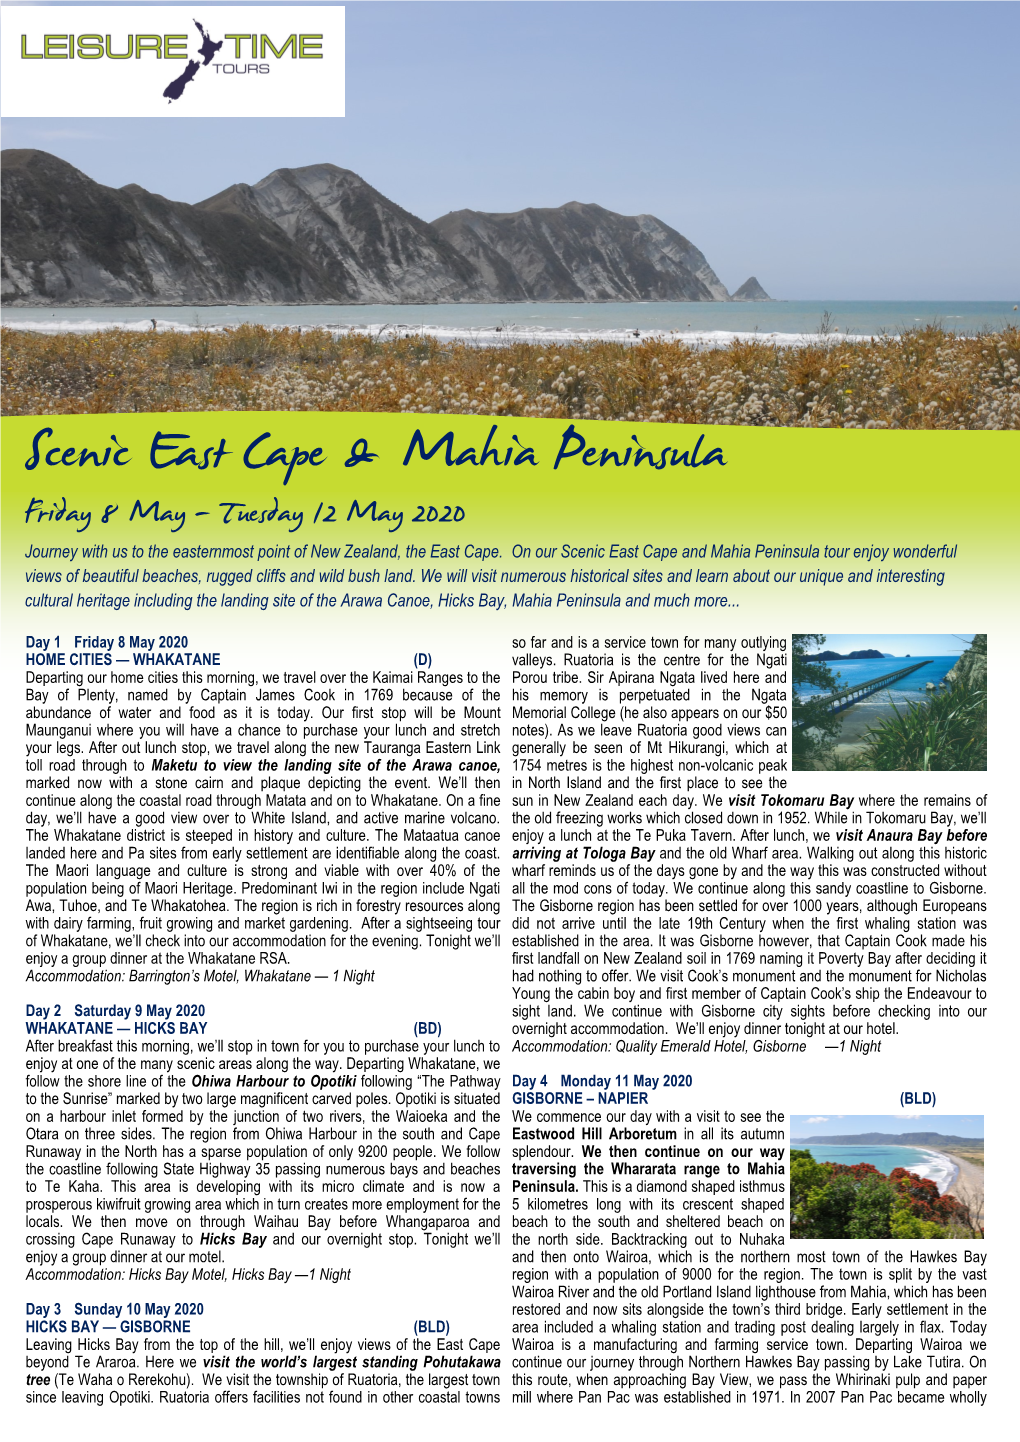 Scenic East Cape & Mahia Peninsula